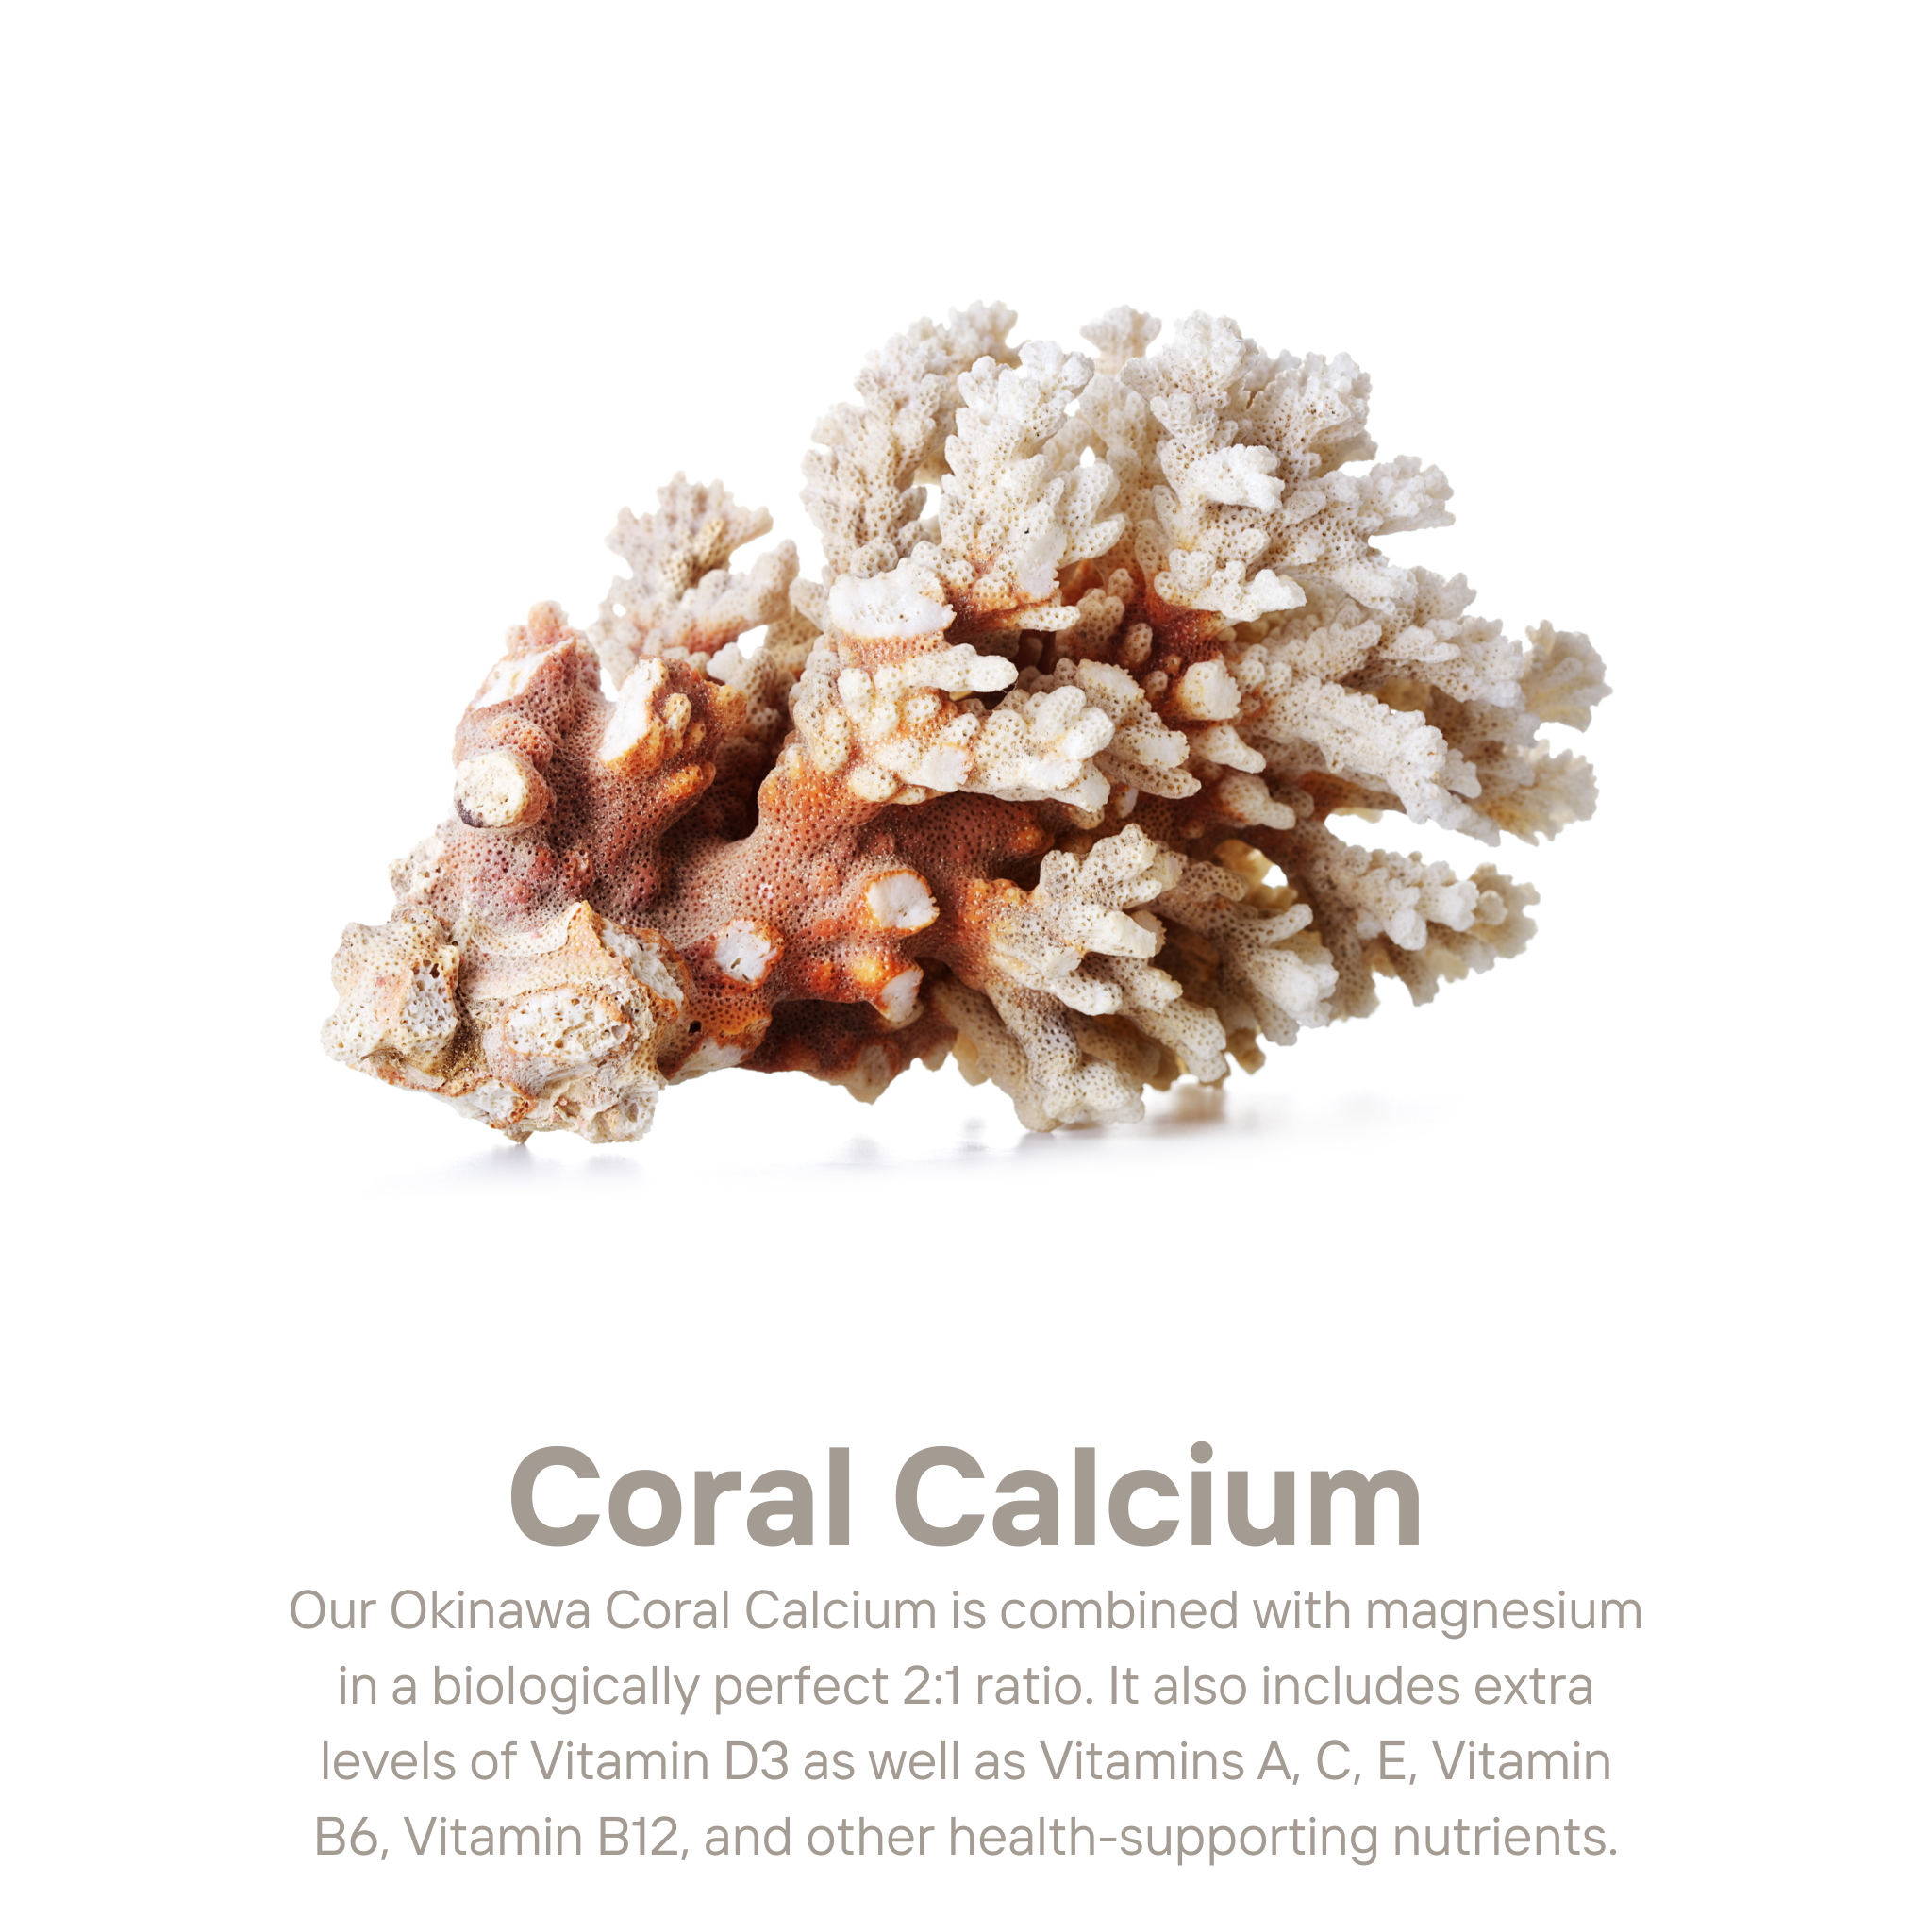 Suplementos de calcio de coral de Okinawa - Salud ósea inmune y de apoyo con magnesio, zinc, potasio, vitaminas y minerales